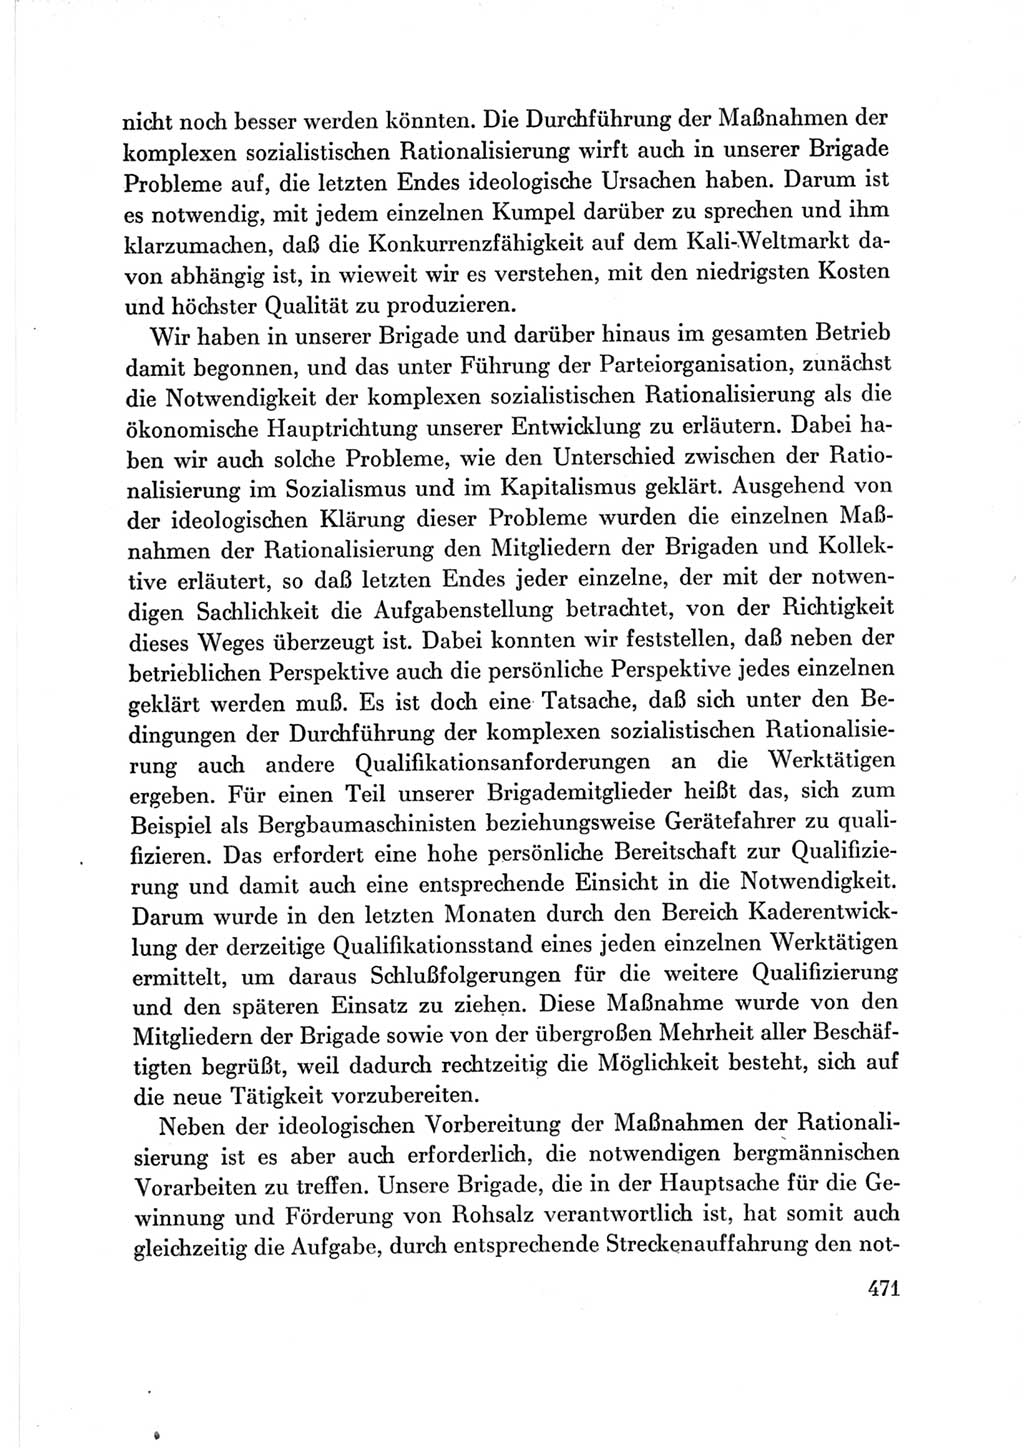 Protokoll der Verhandlungen des Ⅶ. Parteitages der Sozialistischen Einheitspartei Deutschlands (SED) [Deutsche Demokratische Republik (DDR)] 1967, Band Ⅲ, Seite 471 (Prot. Verh. Ⅶ. PT SED DDR 1967, Bd. Ⅲ, S. 471)